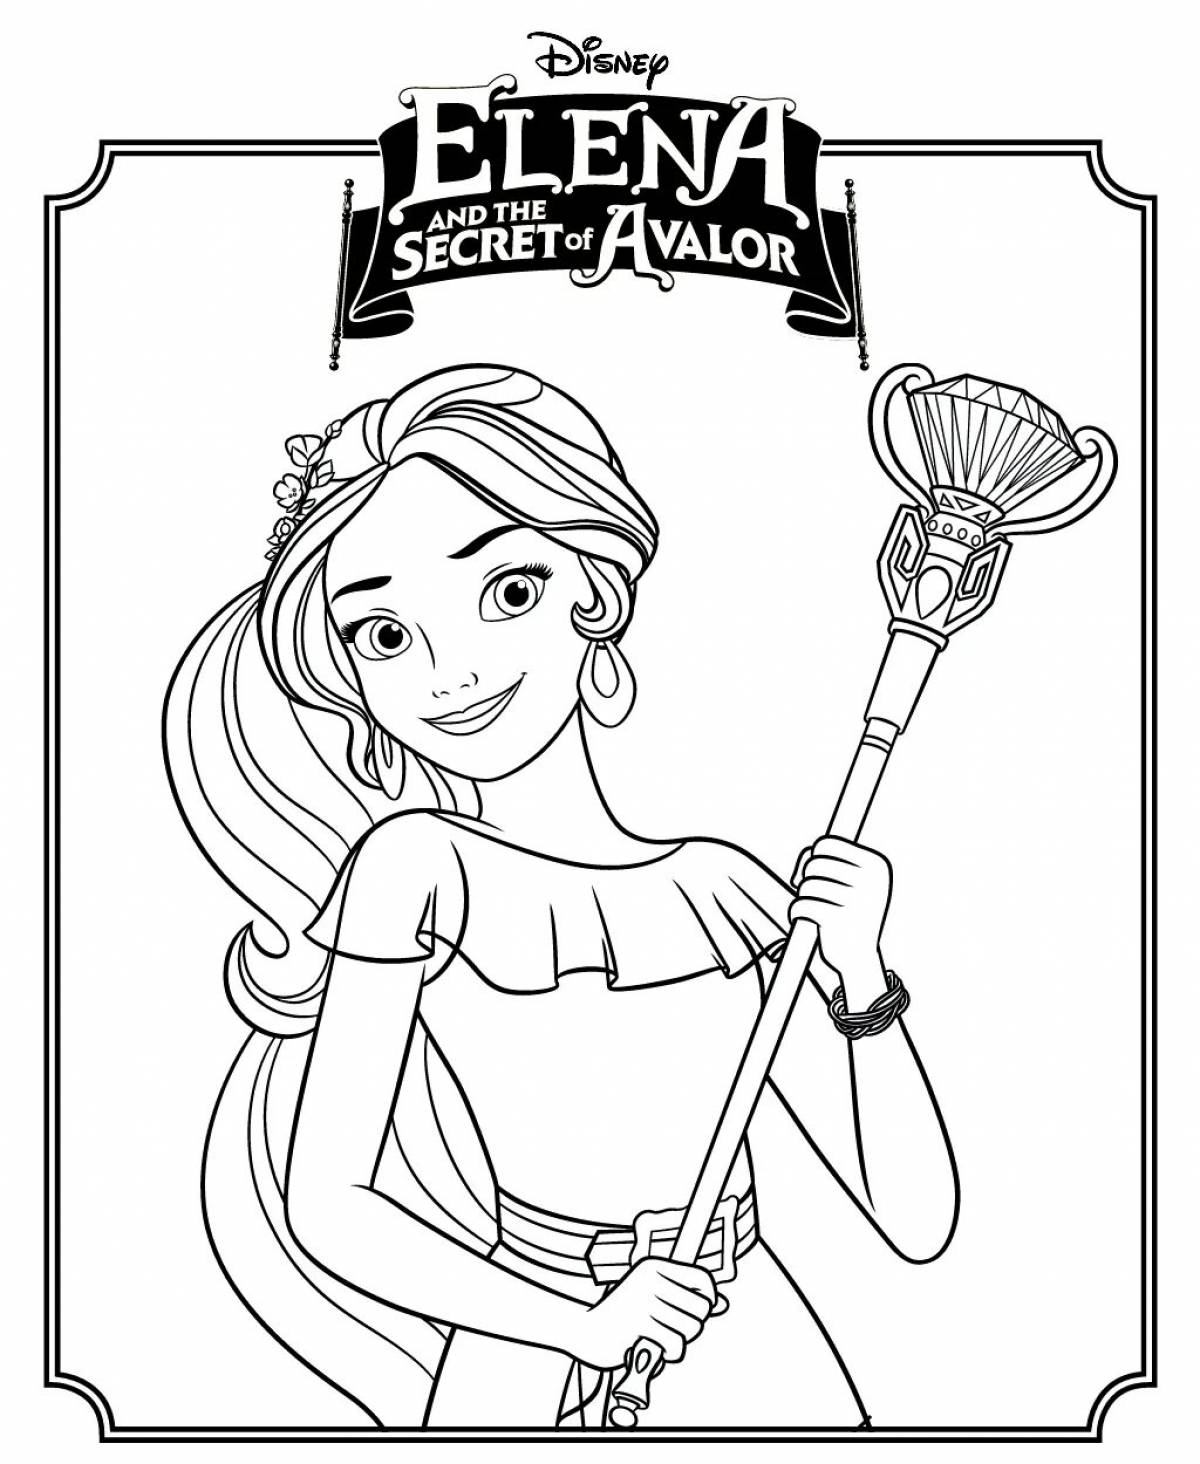 Распечатать раскраски из мультфильма Елена – принцесса Авалора (Elena of Avalor)